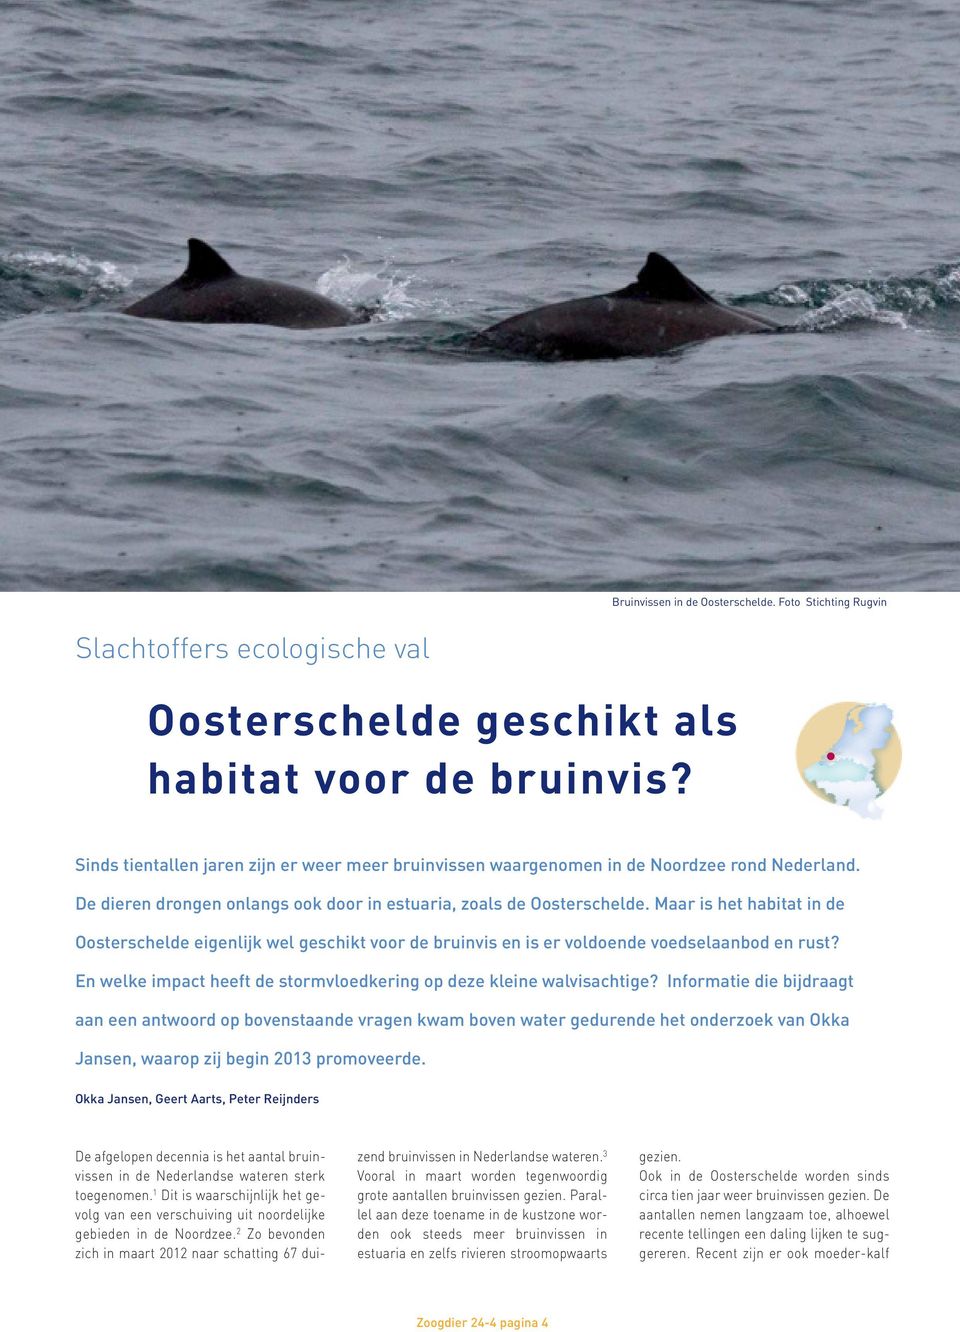 Maar is het habitat in de Oosterschelde eigenlijk wel geschikt voor de bruinvis en is er voldoende voedselaanbod en rust? En welke impact heeft de stormvloedkering op deze kleine walvisachtige?